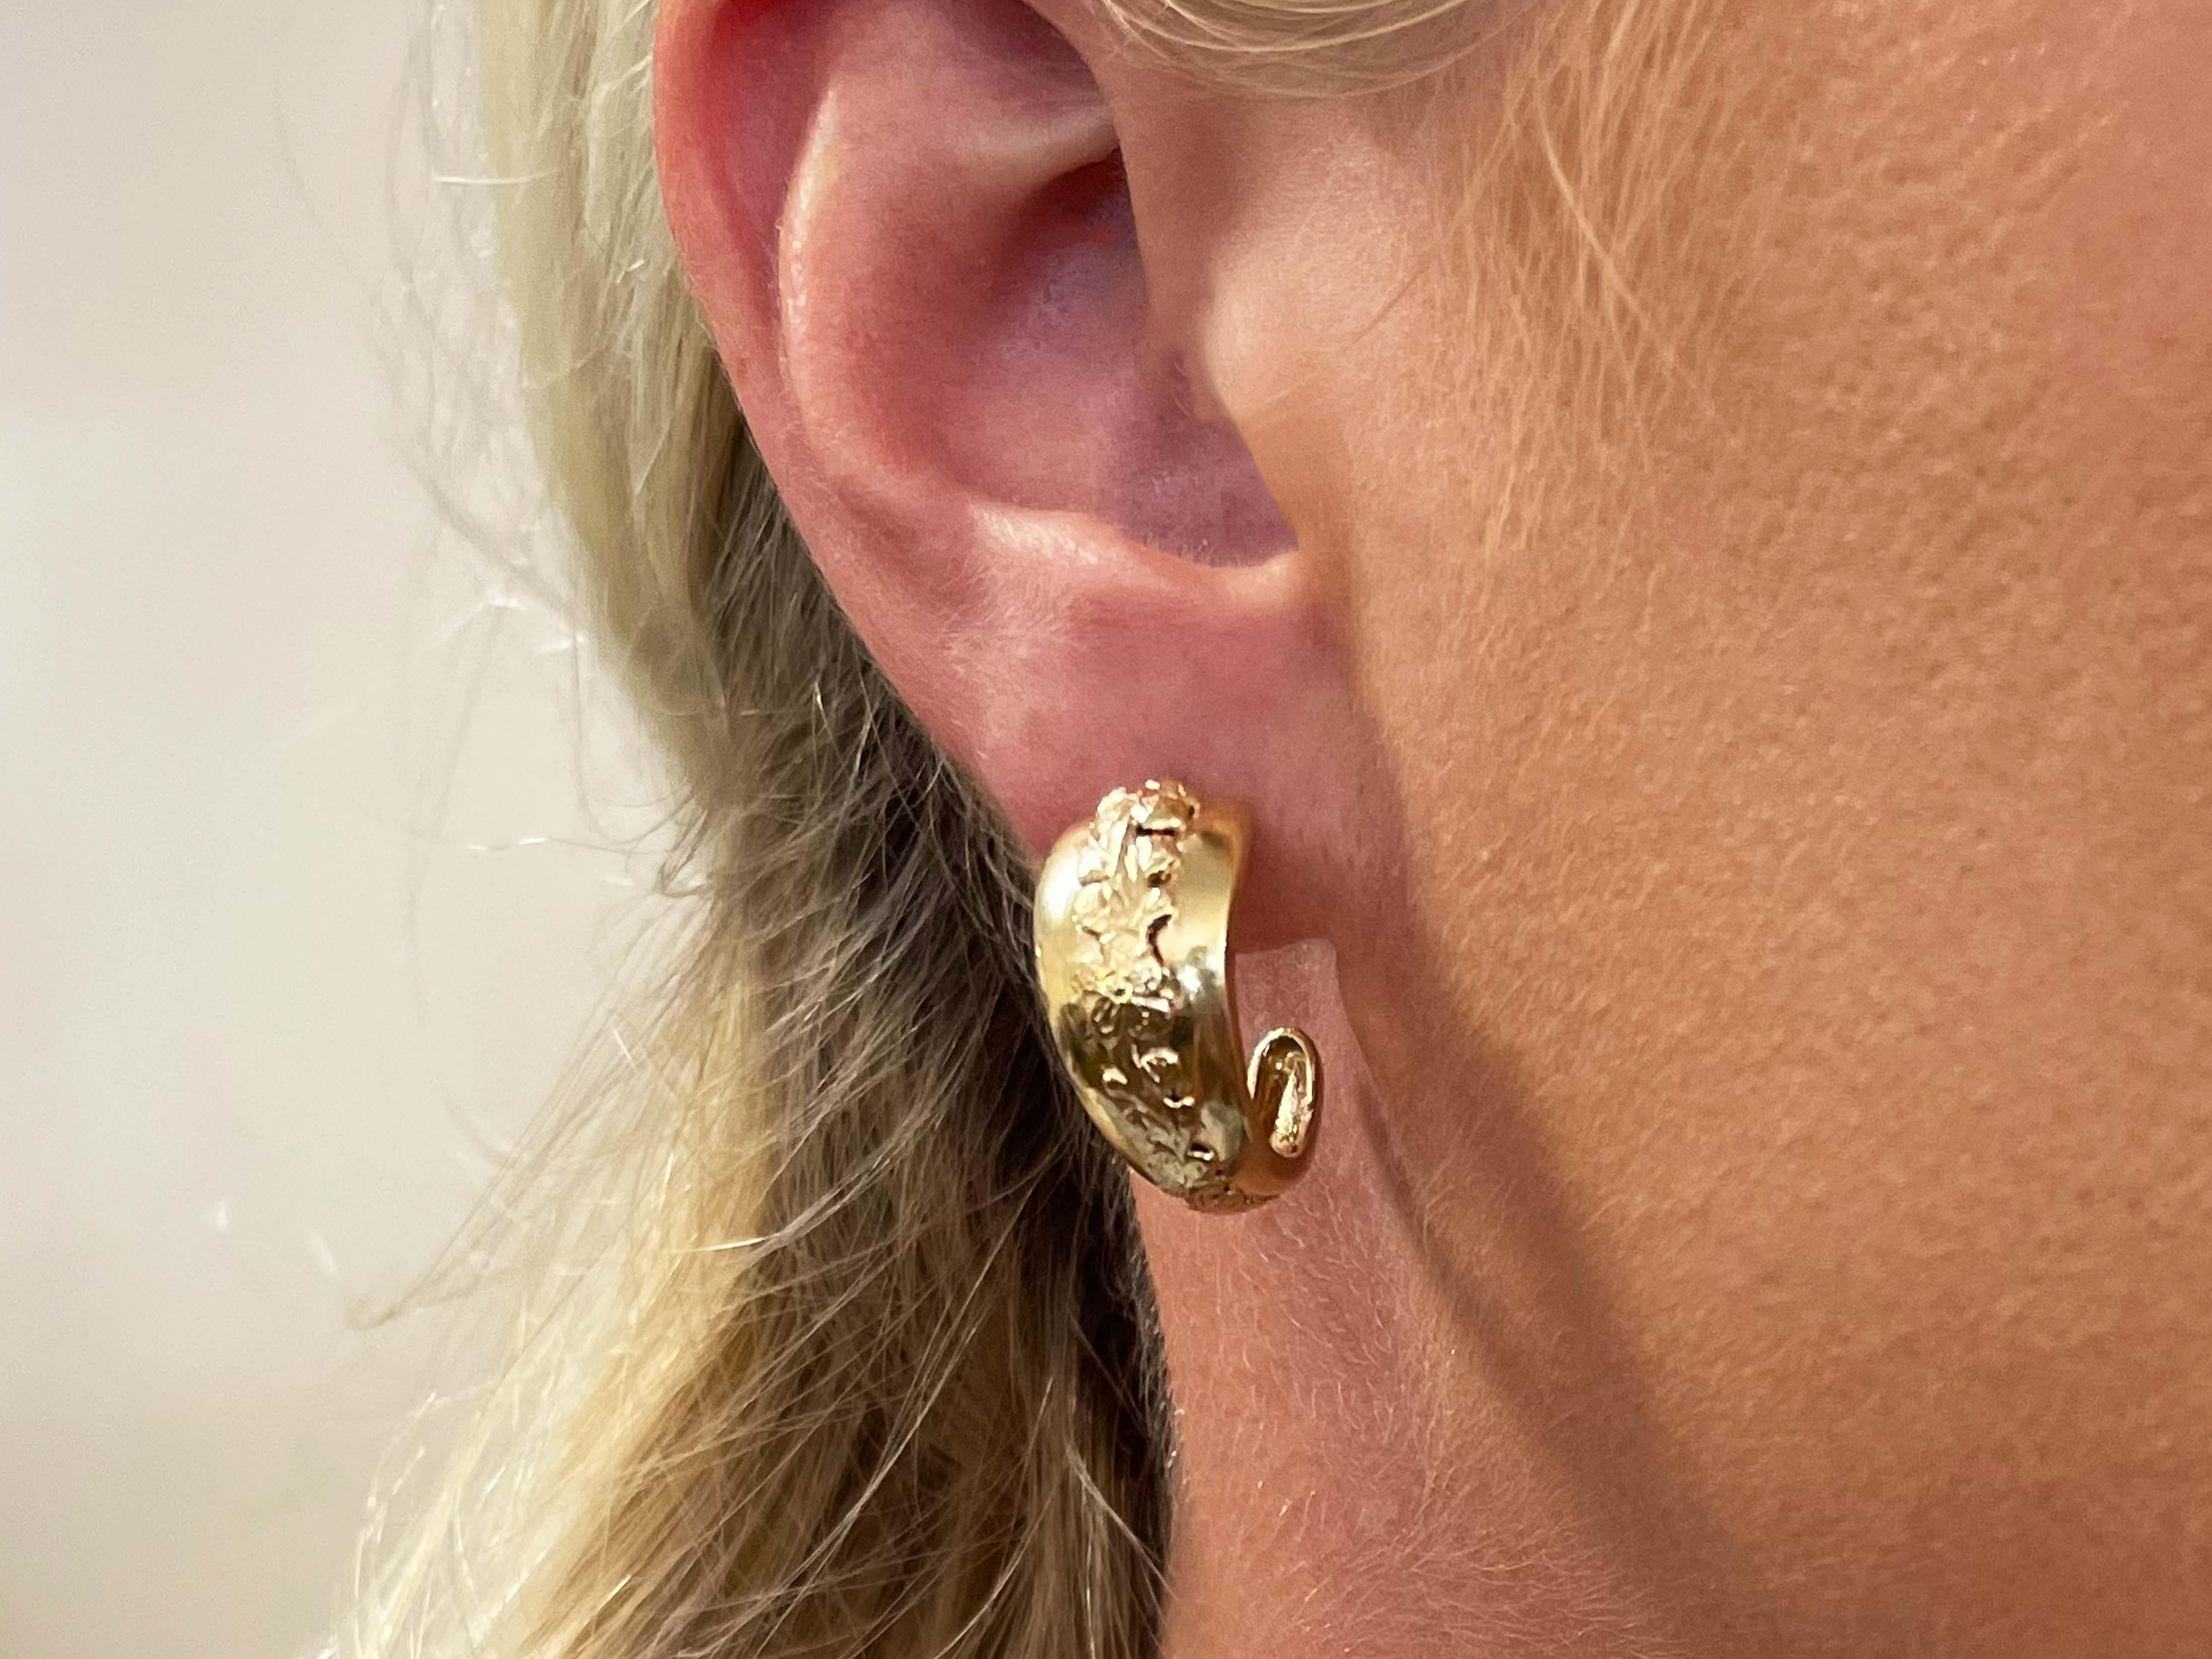 Earrings Specifications:

Designer: Ming's

Metal: 14K Yellow Gold

Total Weight: 8.0 Grams

Hoop Width: 11 mm

Hoop Diameter: 21 mm

Stamped: 